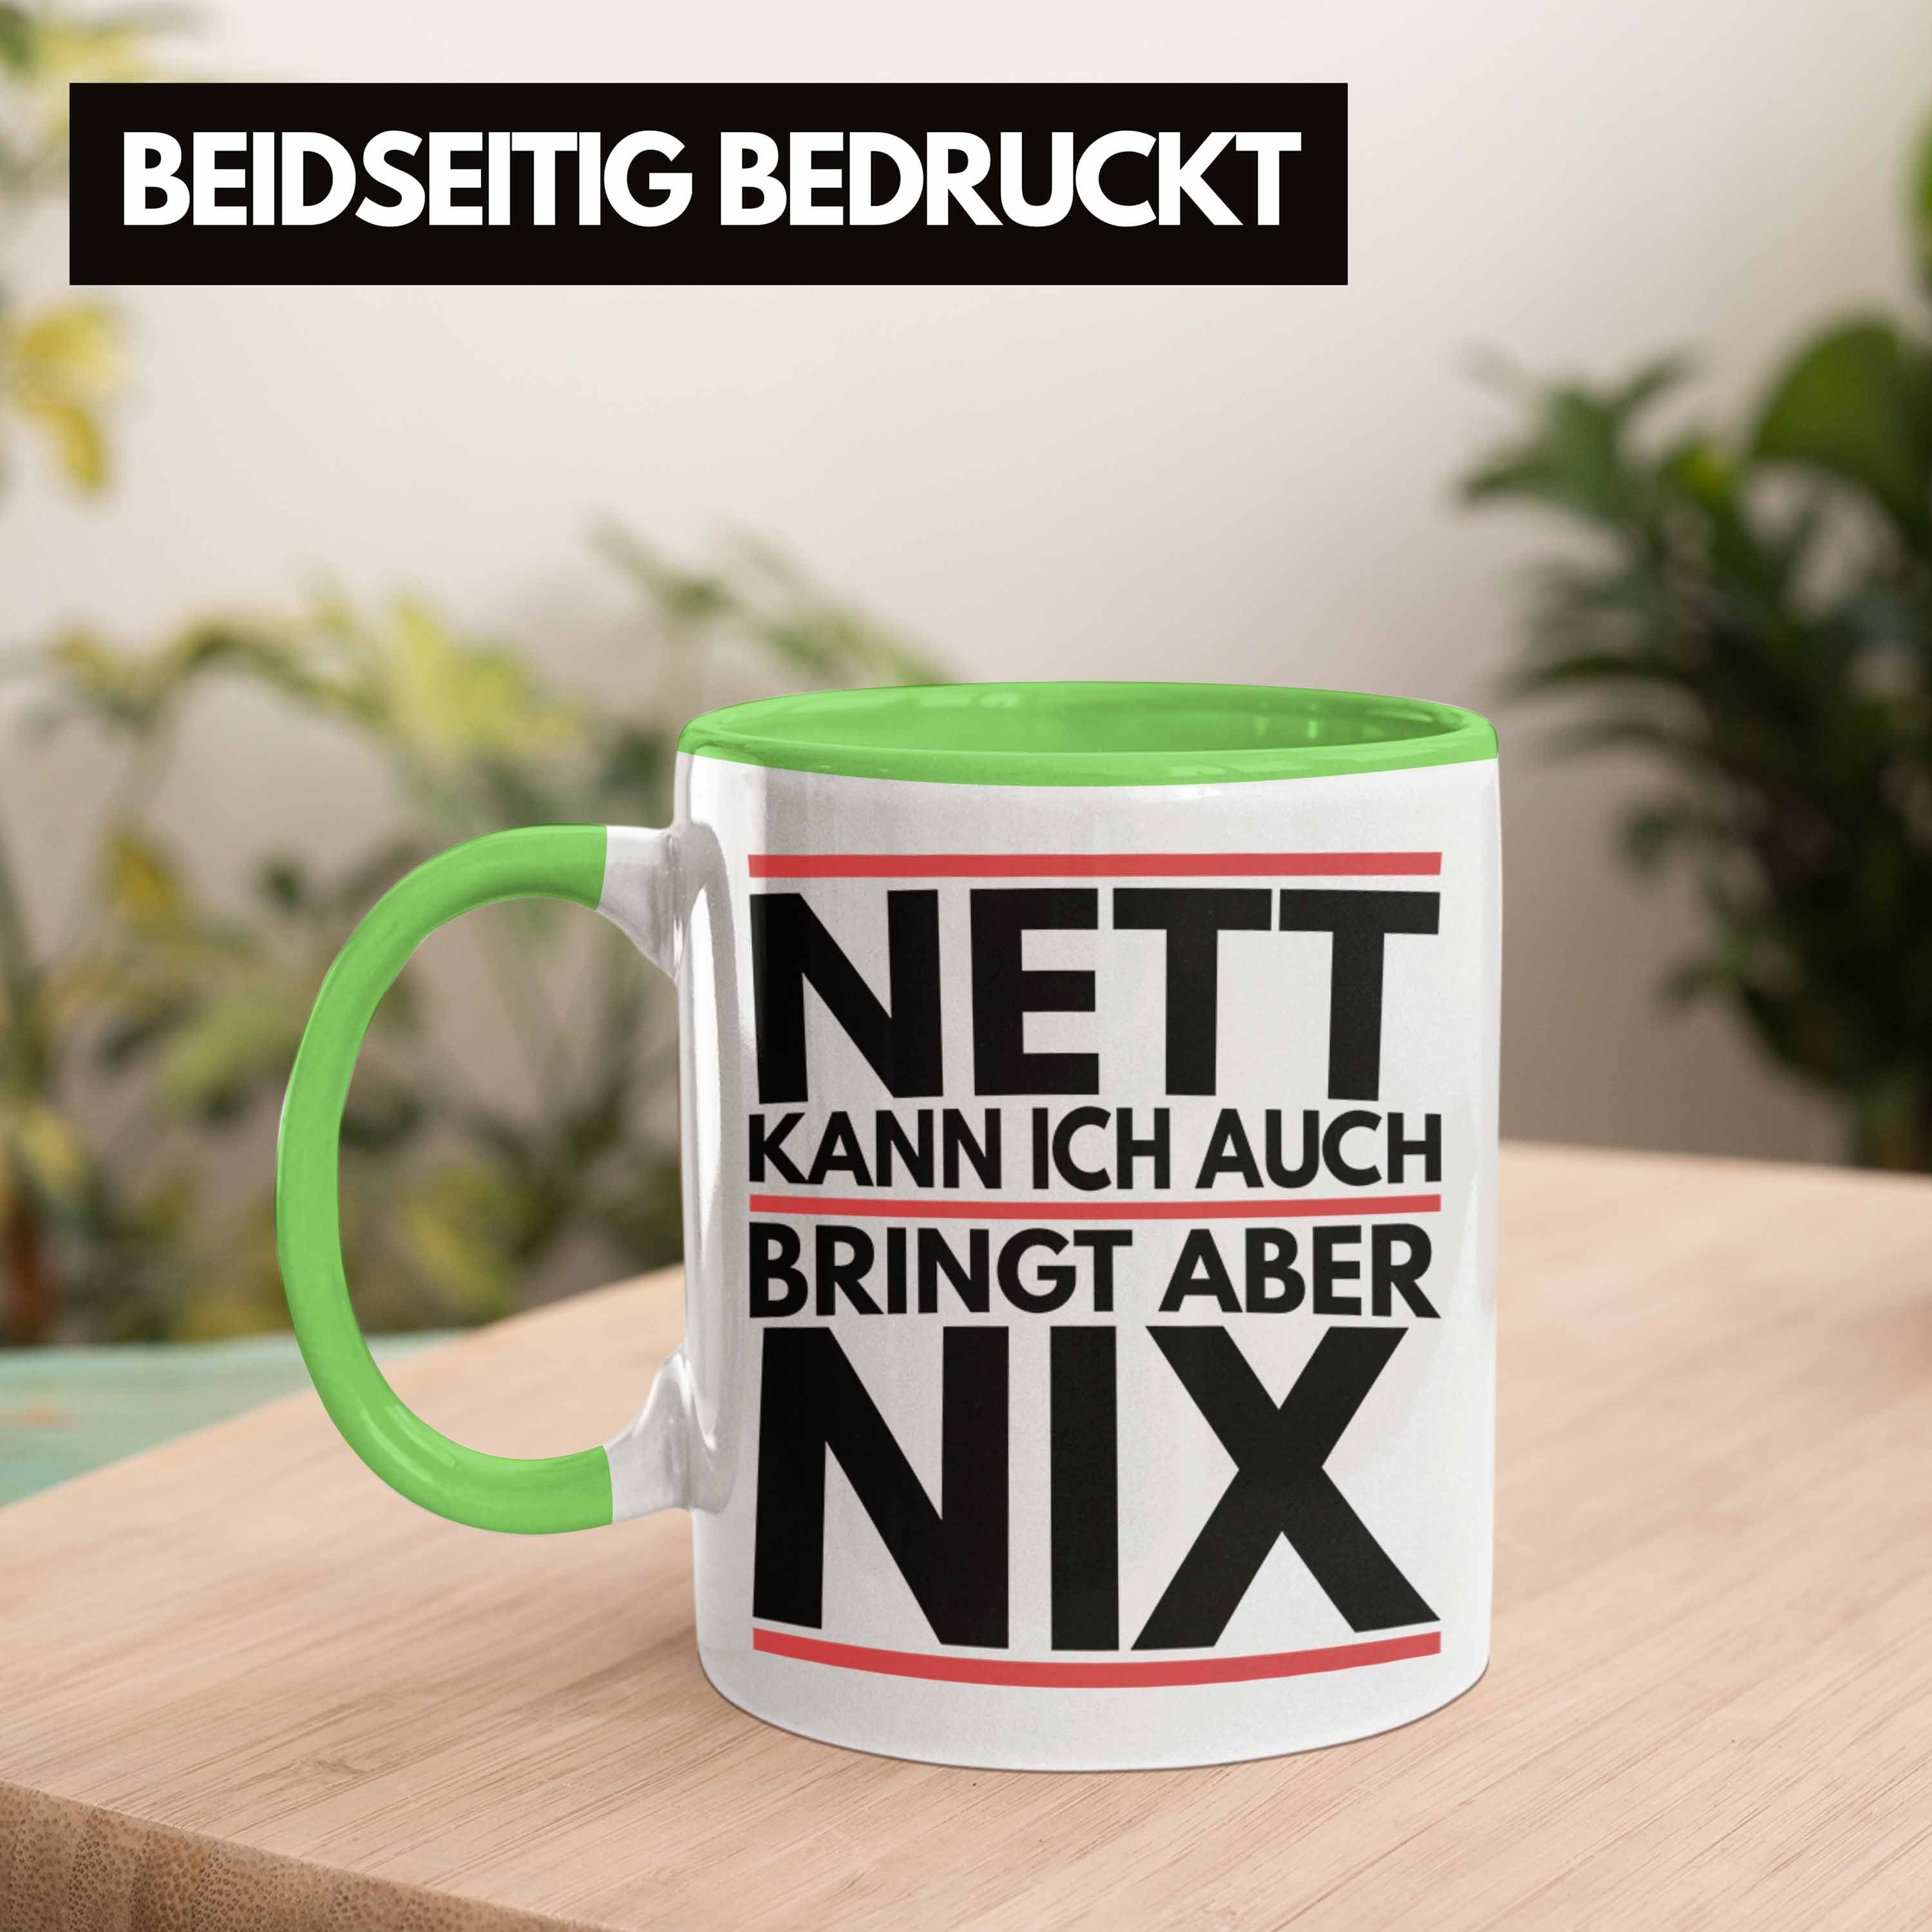 Chef Aber Ich Trendation Kann Kollege Tasse Grün Tasse Bringt Nix - Auch Trendation Nett Humor Joke Geschenk